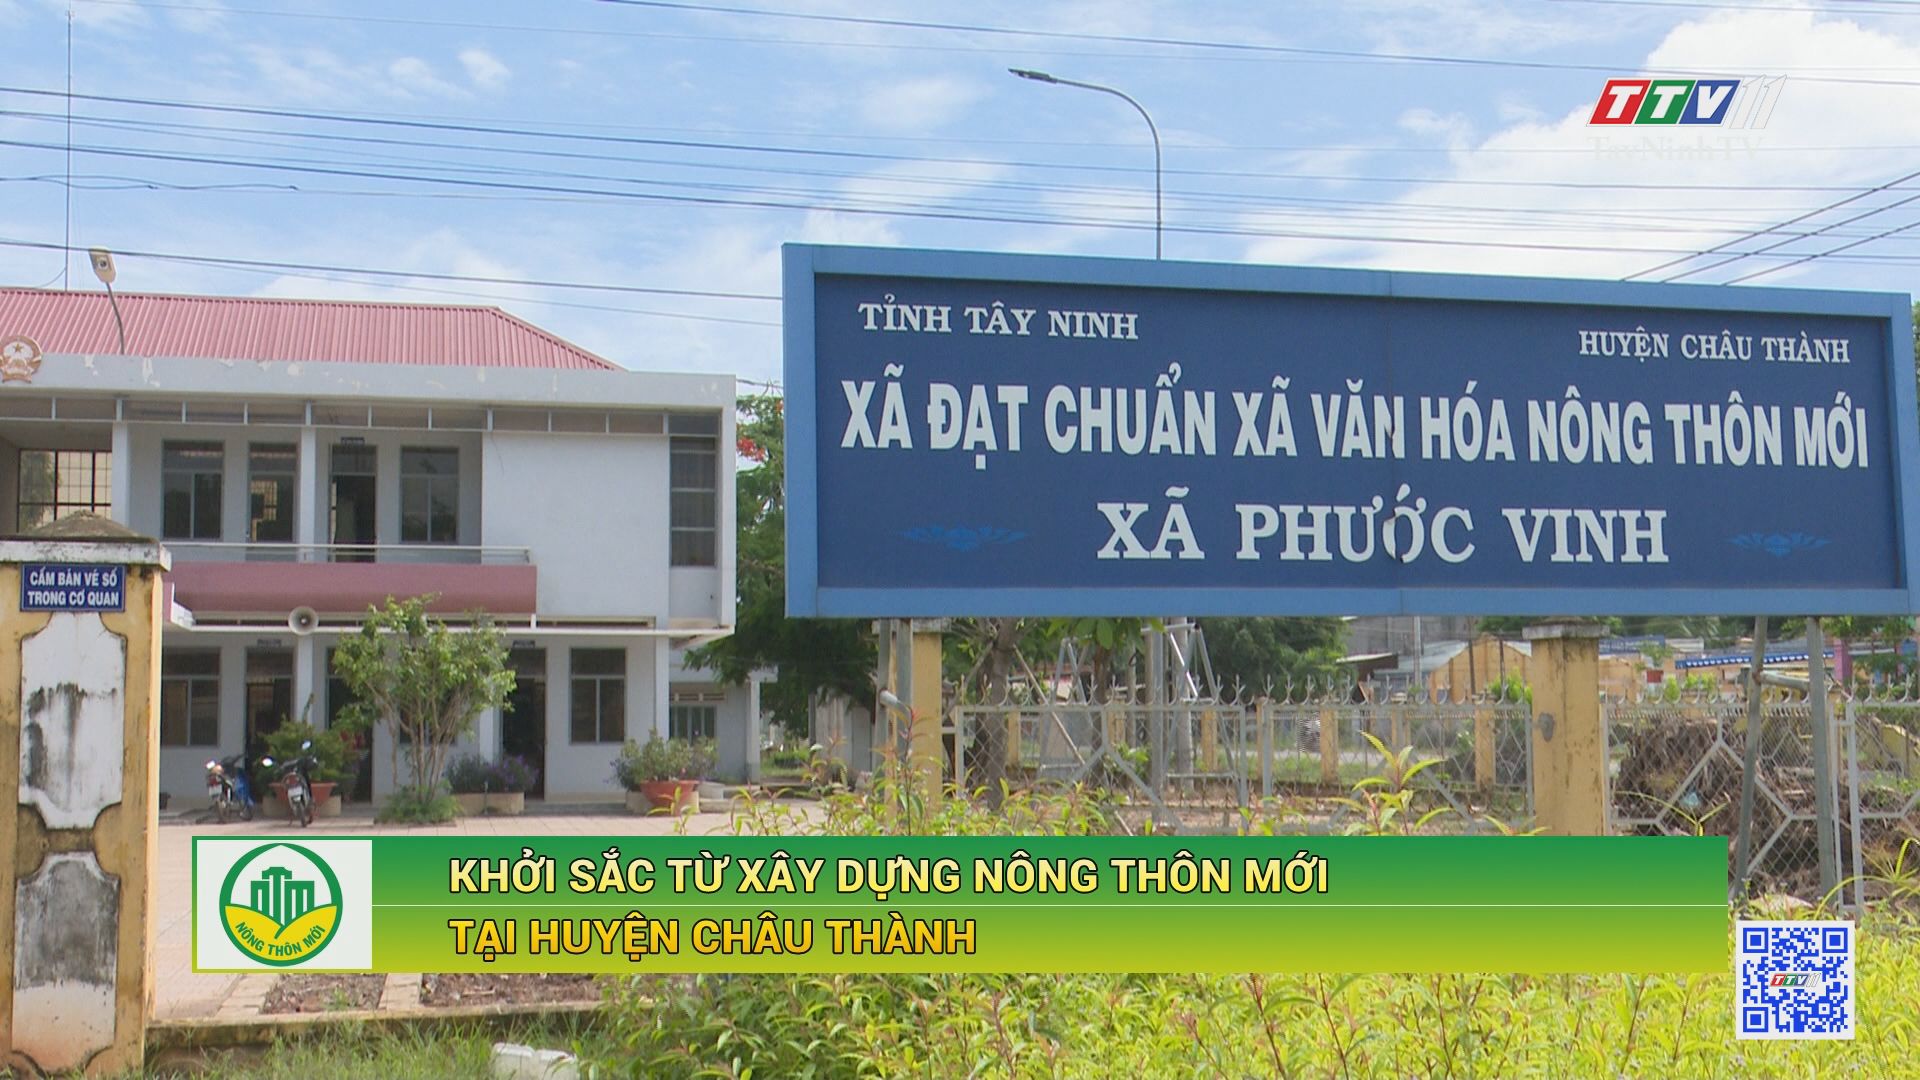 Khởi sắc từ xây dựng nông thôn mới tại huyện Châu Thành | TÂY NINH XÂY DỰNG NÔNG THÔN MỚI | TayNinhTV